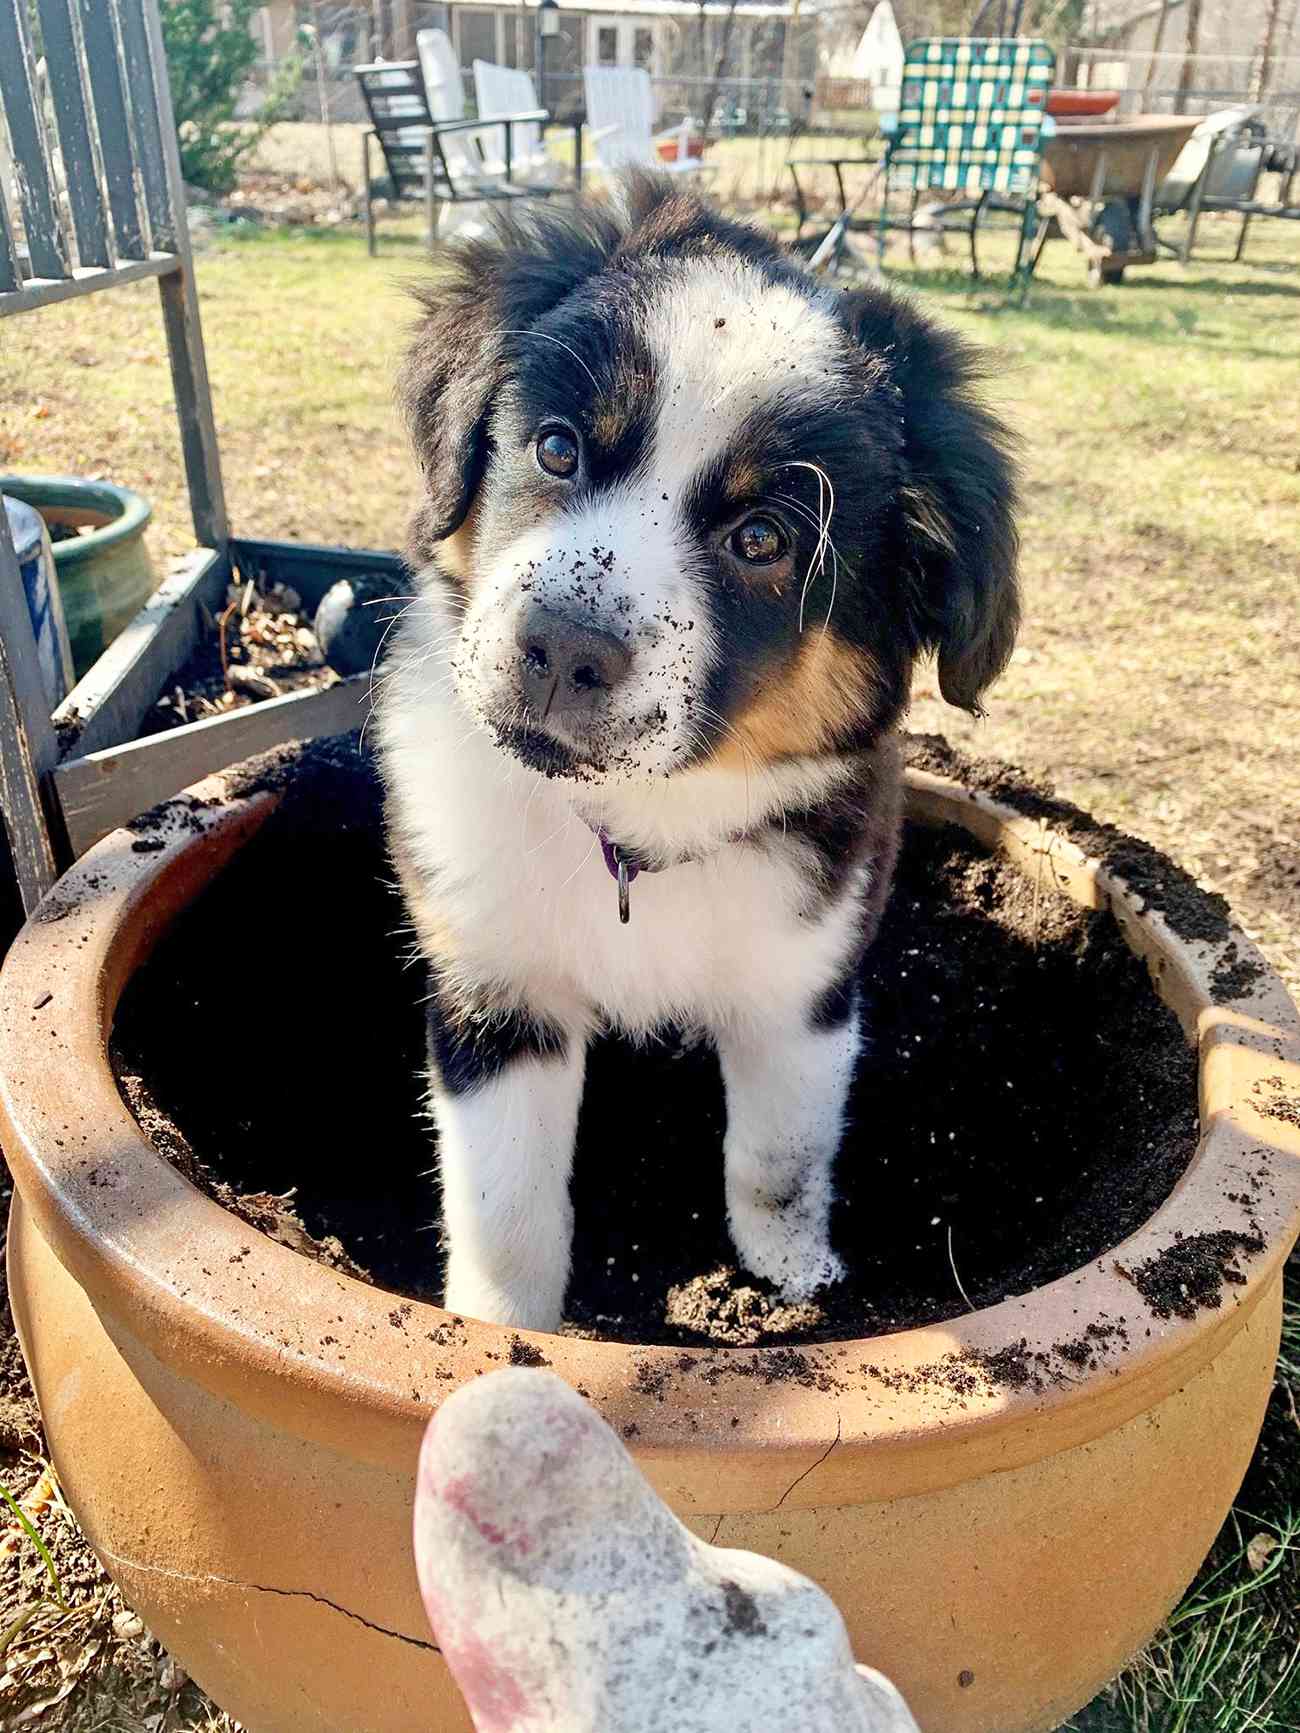 Shepherd puppy sits inside pot of dirt outside